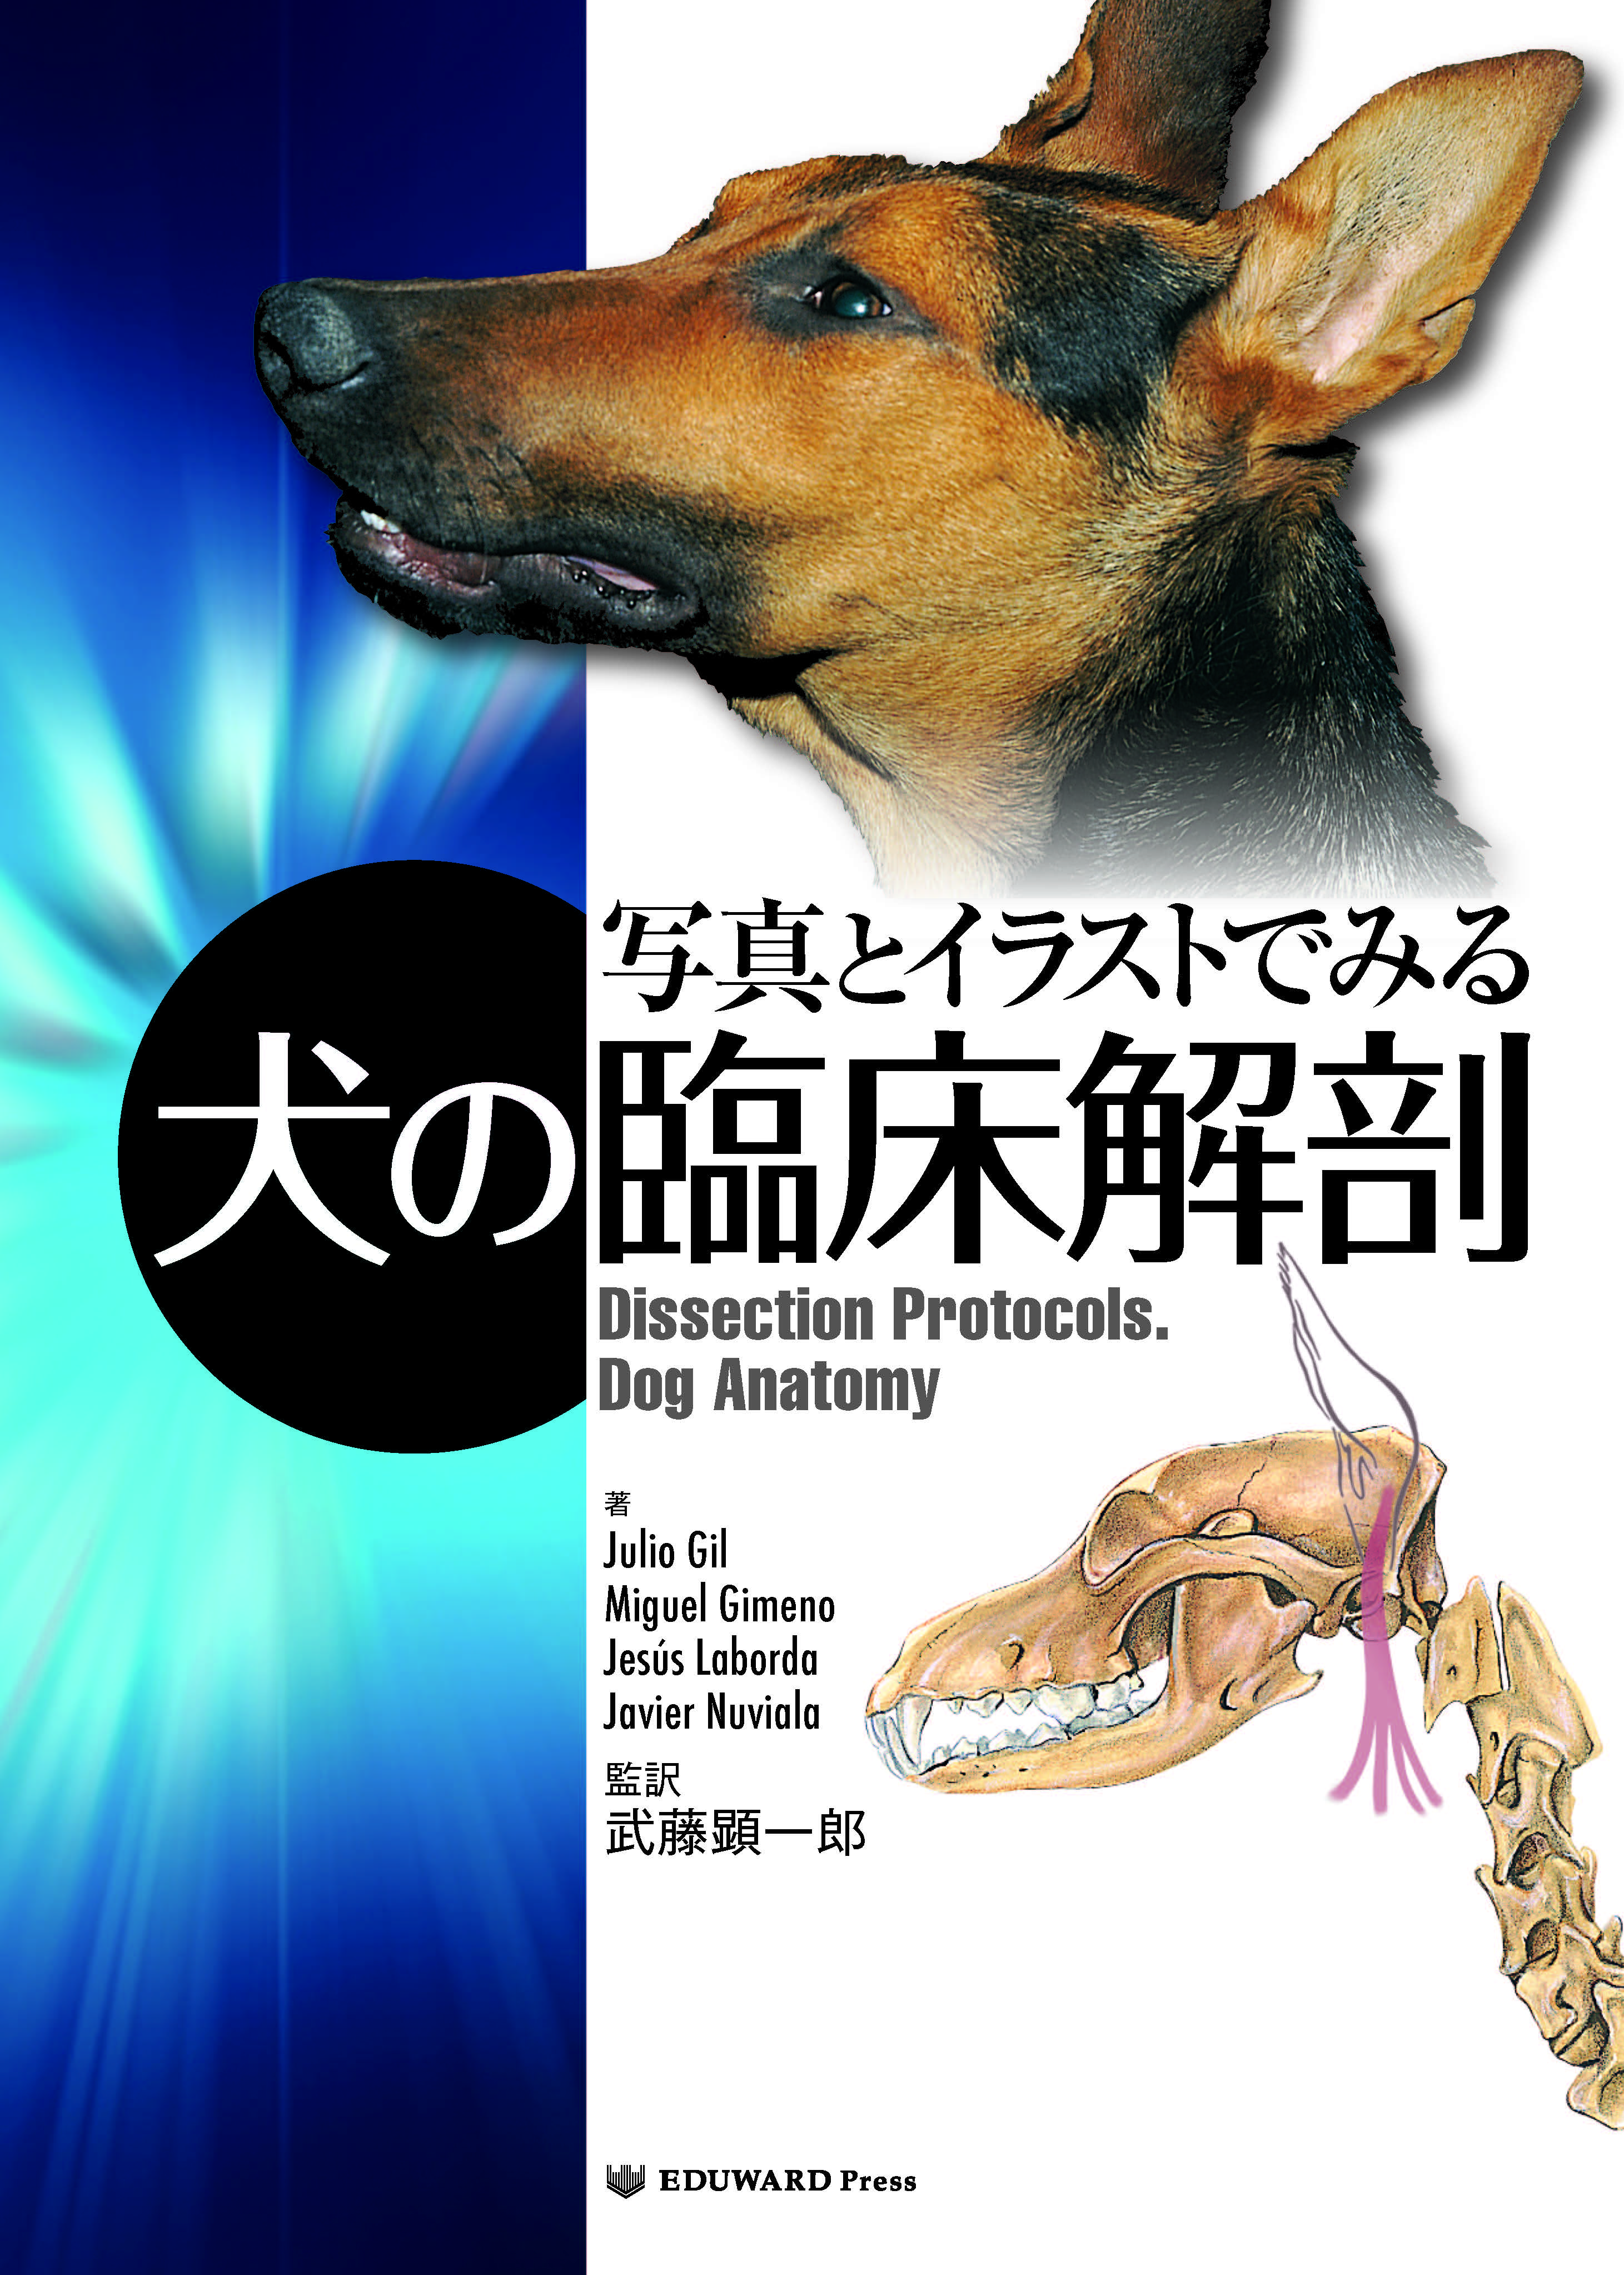 獣医学本・書籍・ビデオ・雑誌・DVD エデュワードプレスオンライン